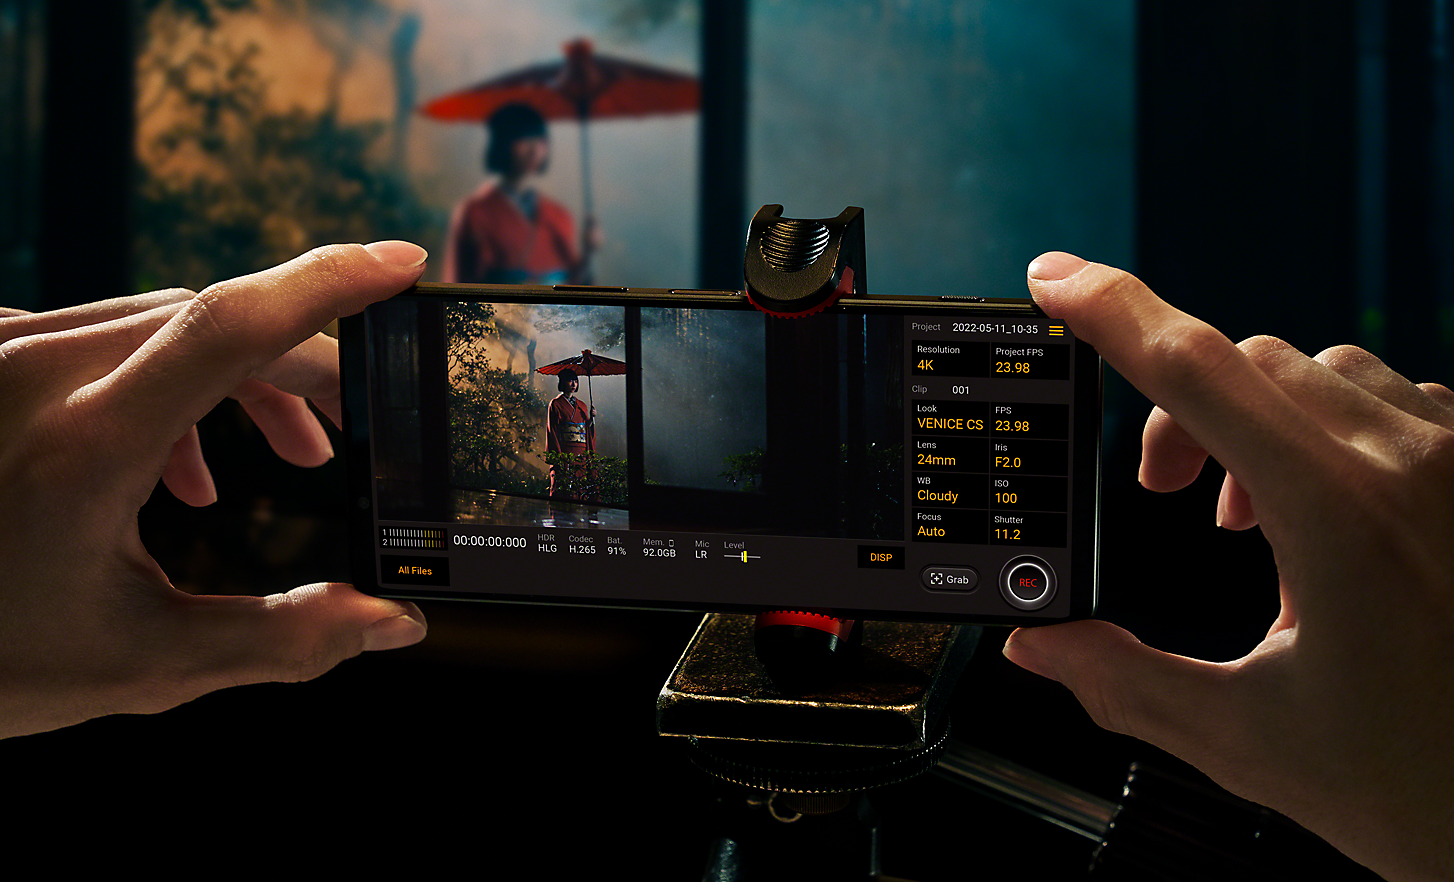 Kädet pitelemässä Xperia 1 IV -puhelinta, jonka näytöllä näkyy Cinematography Pro -valikko